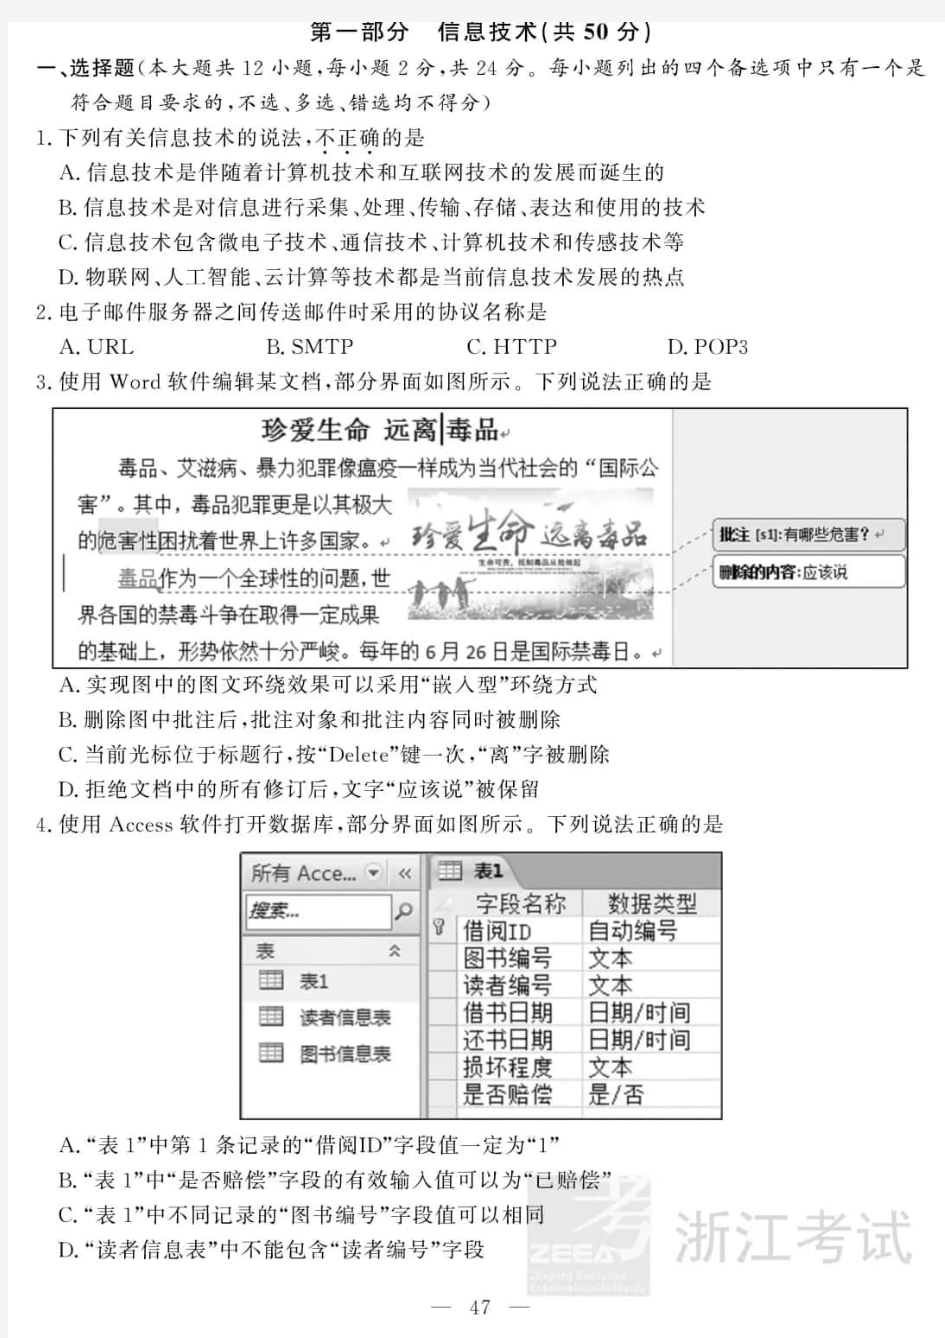 2018年11月浙江省普通高校招生考试选考科目技术试题及答案